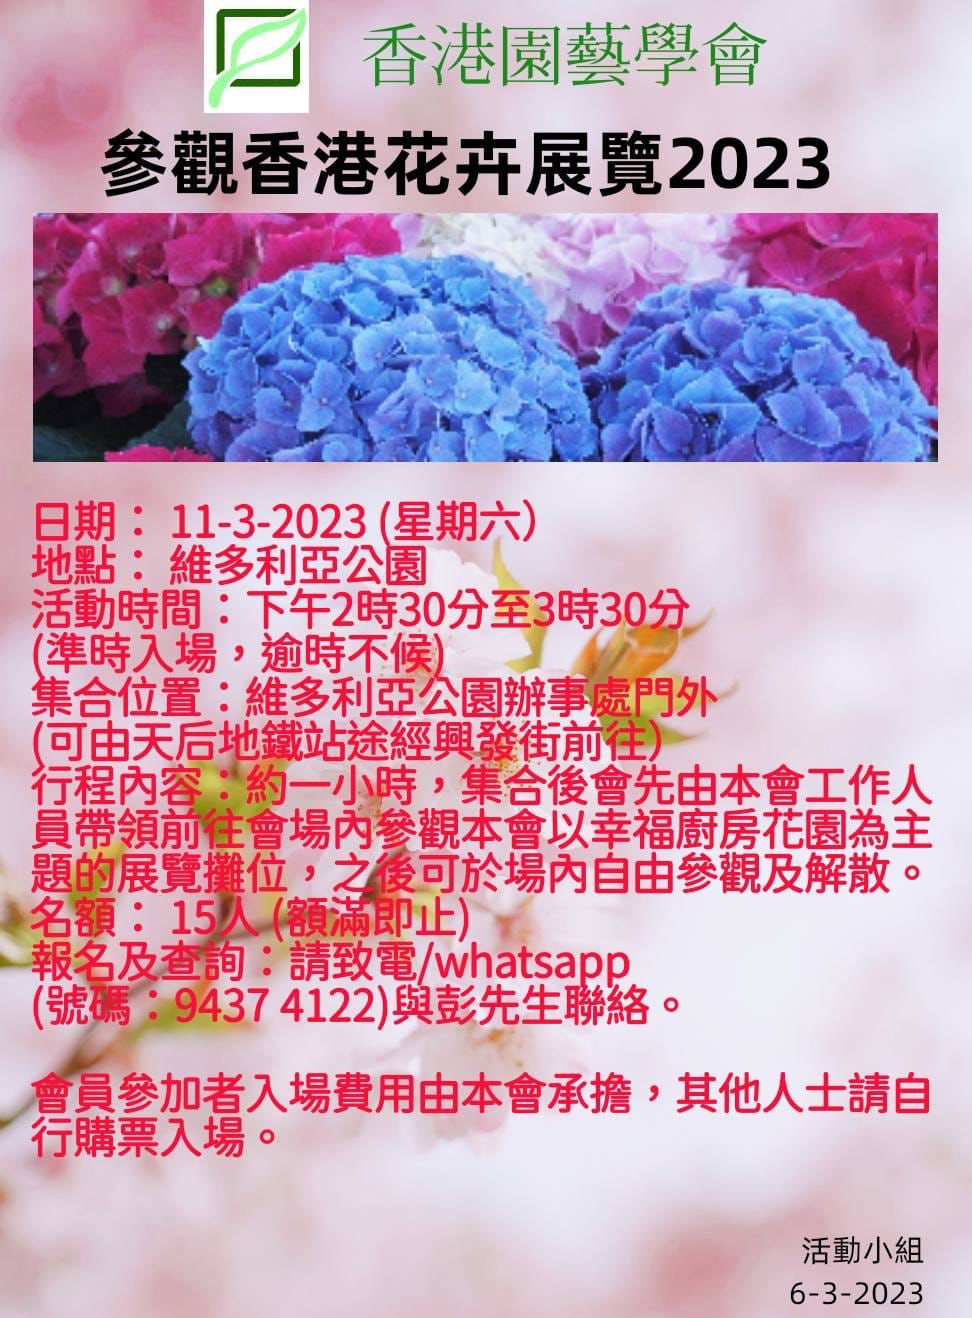  參觀香港花卉展覽2023